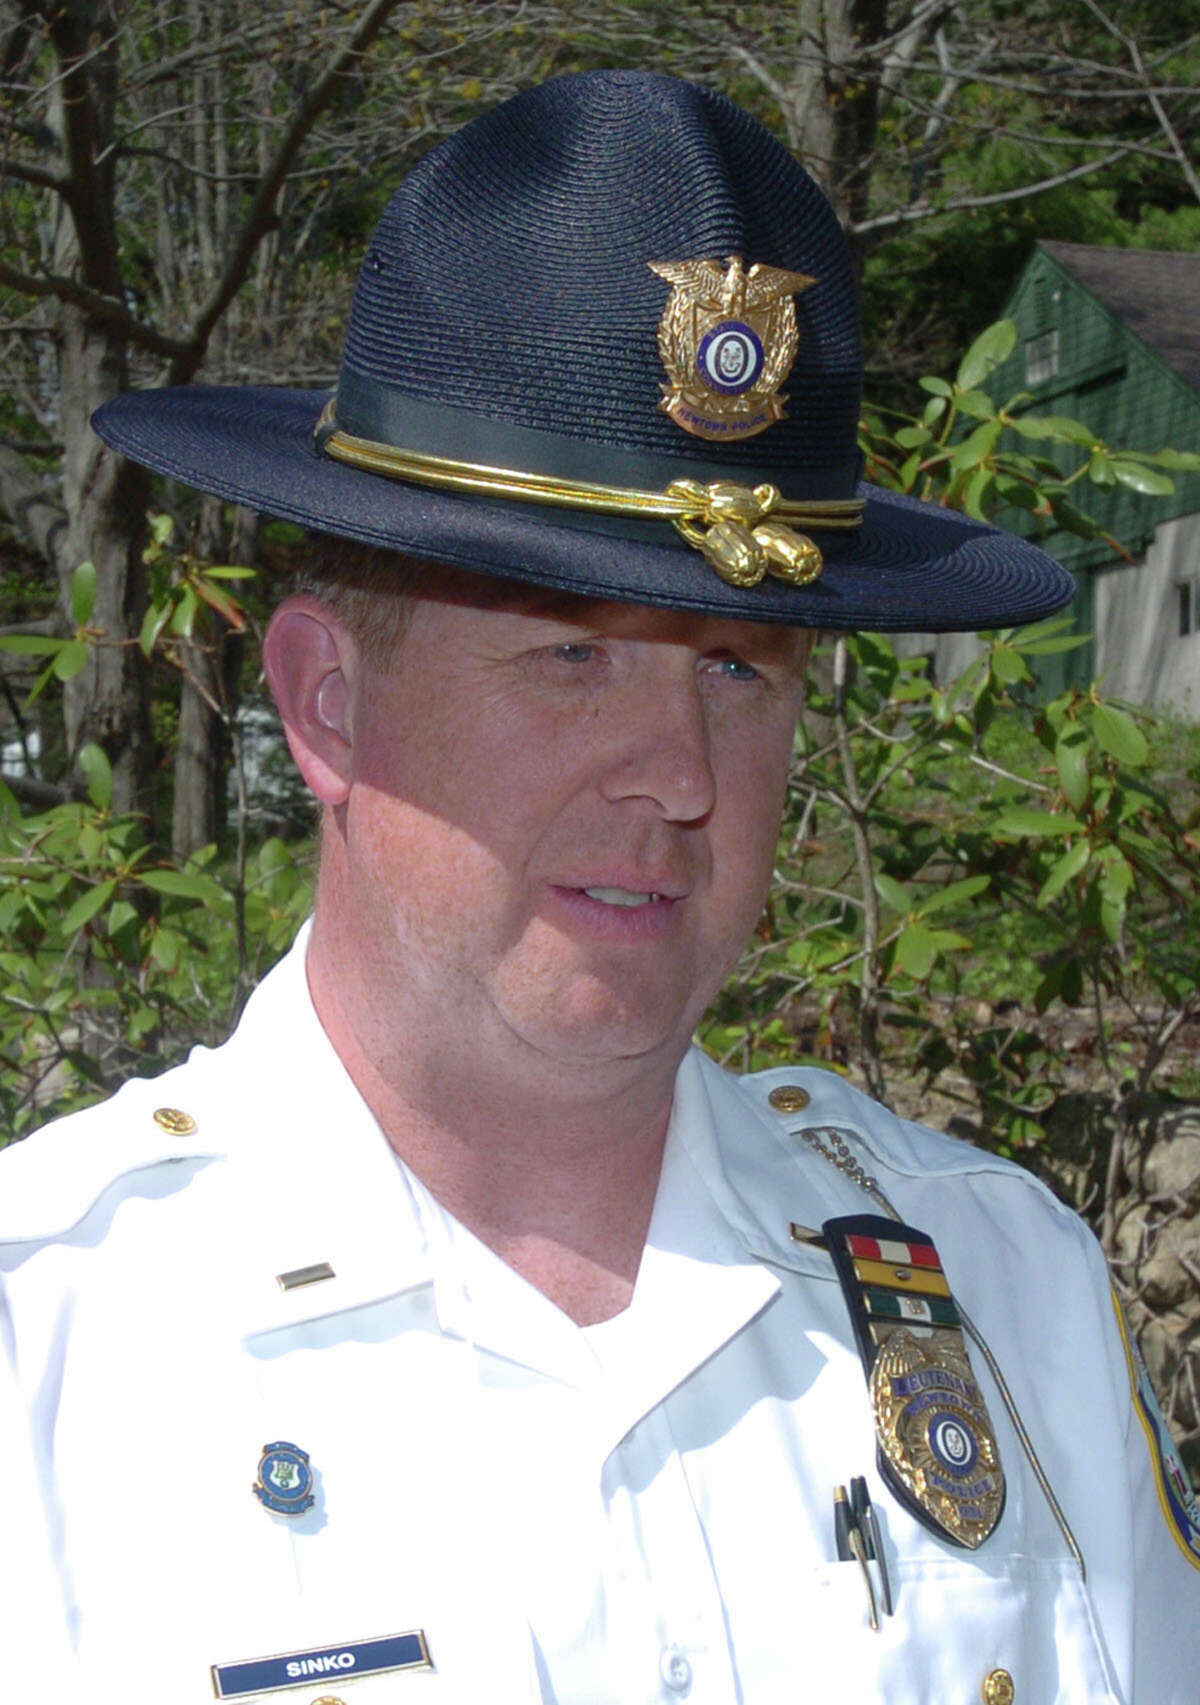 Lt. George Sinko, of Newtown Police Department.